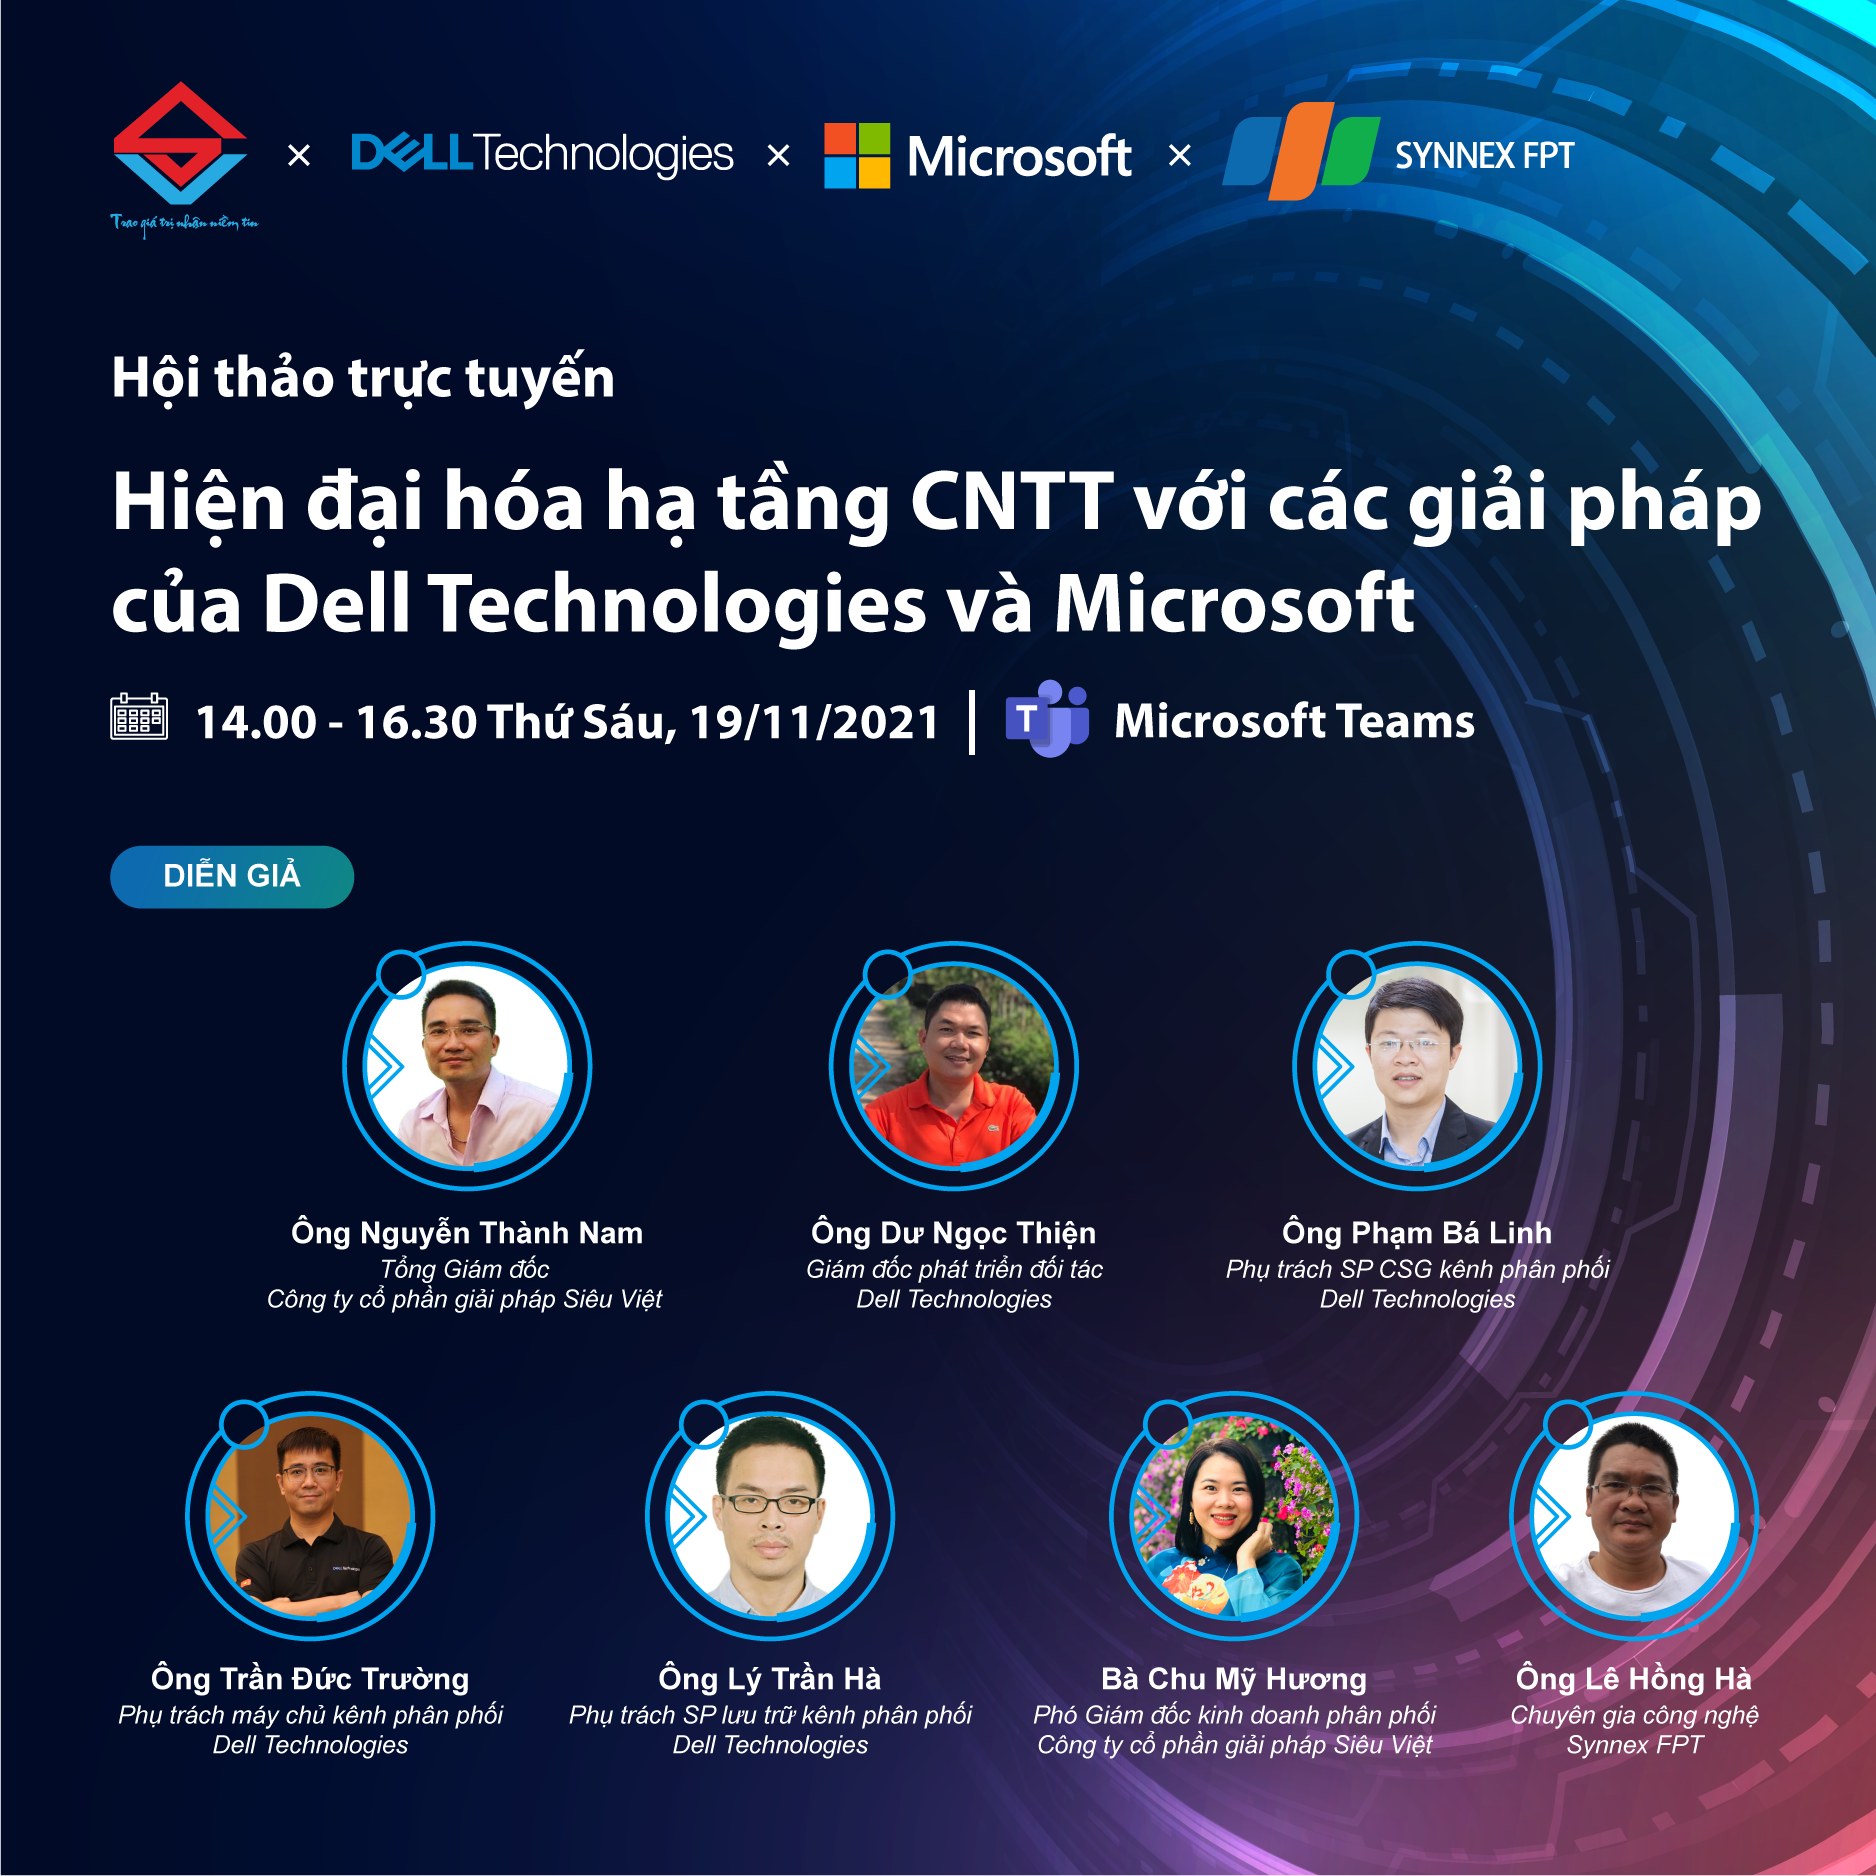 Siêu Việt tổ chức thành công hội thảo trực tuyến “Hiện đại hóa hạ tầng CNTT với các giải pháp của Dell Technologies và Microsoft”